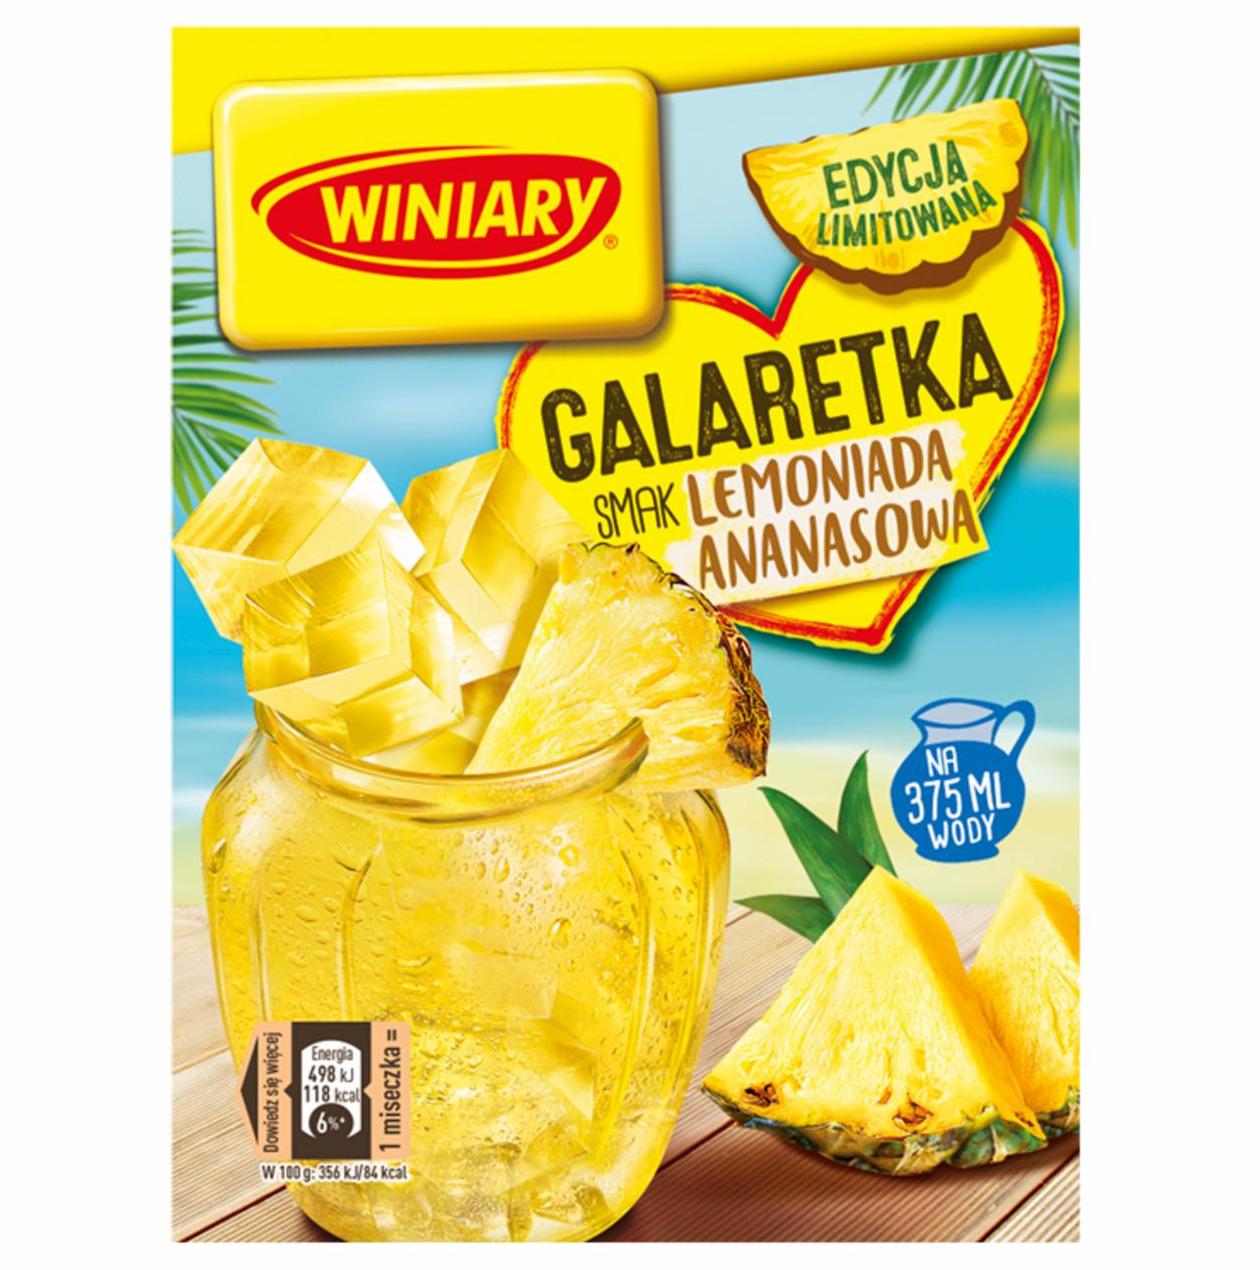 Zdjęcia - Winiary Galaretka smak lemoniada ananasowa 47 g